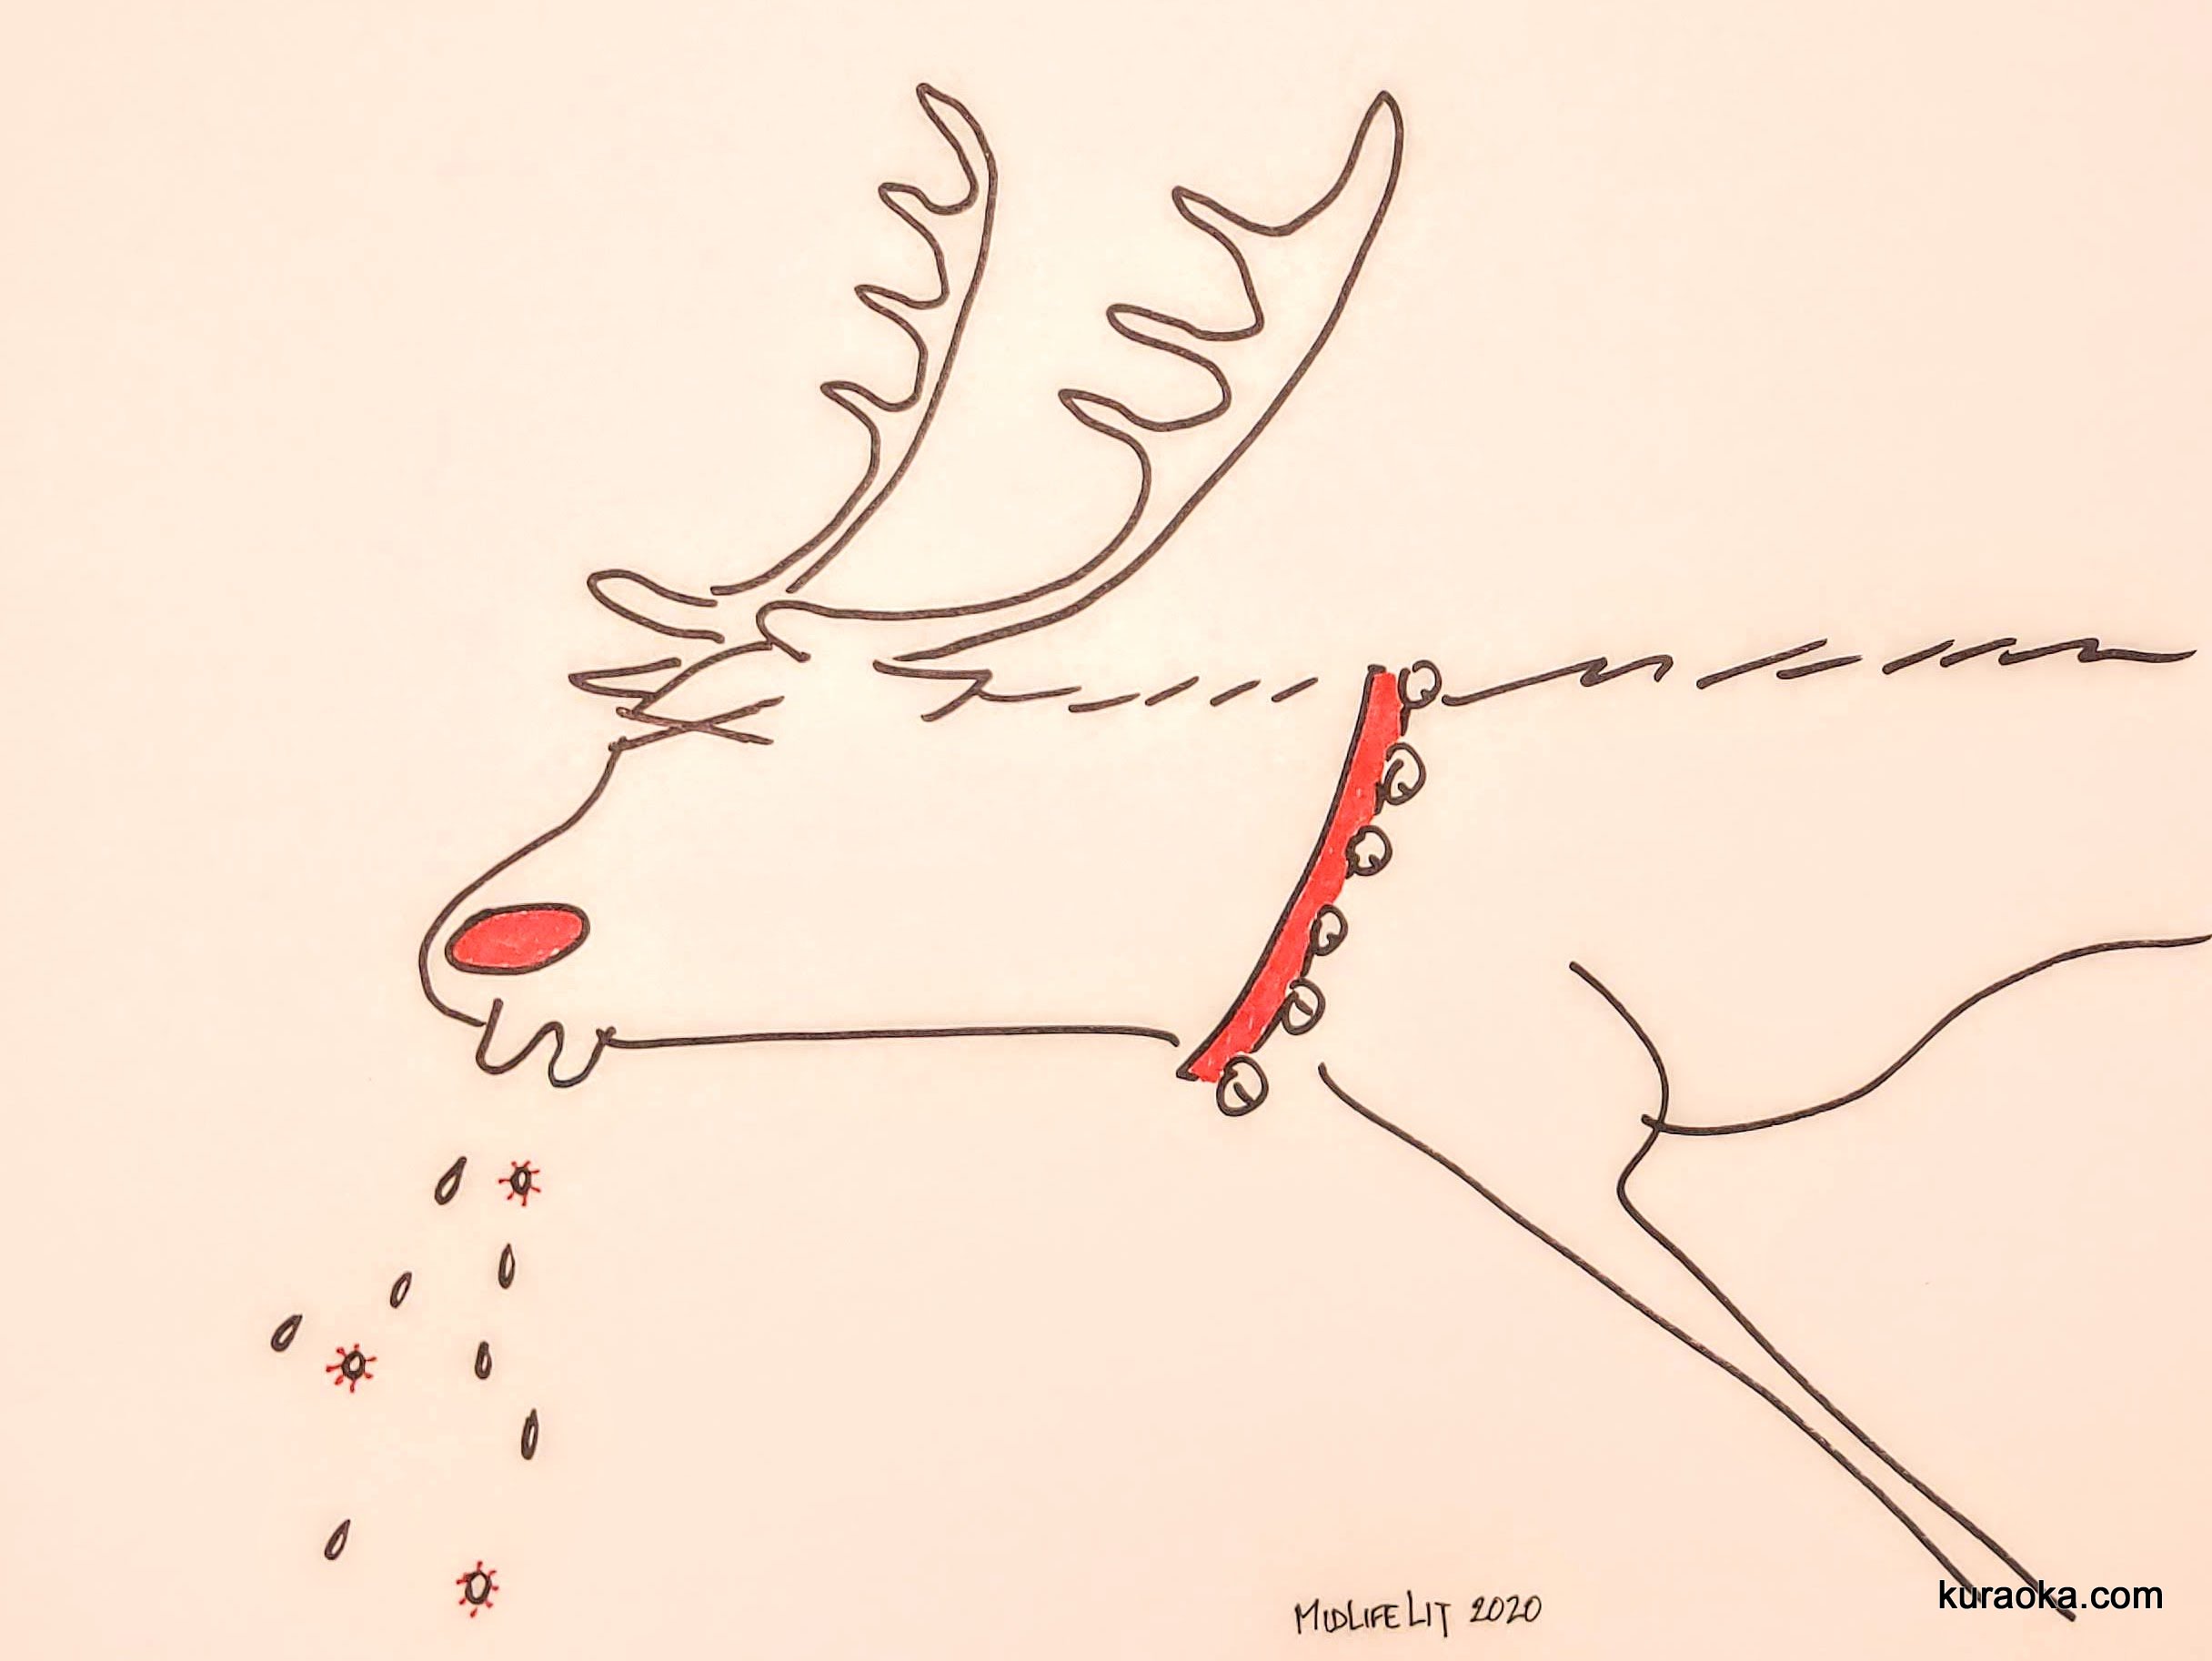 My drawing of a sneezing reindeer